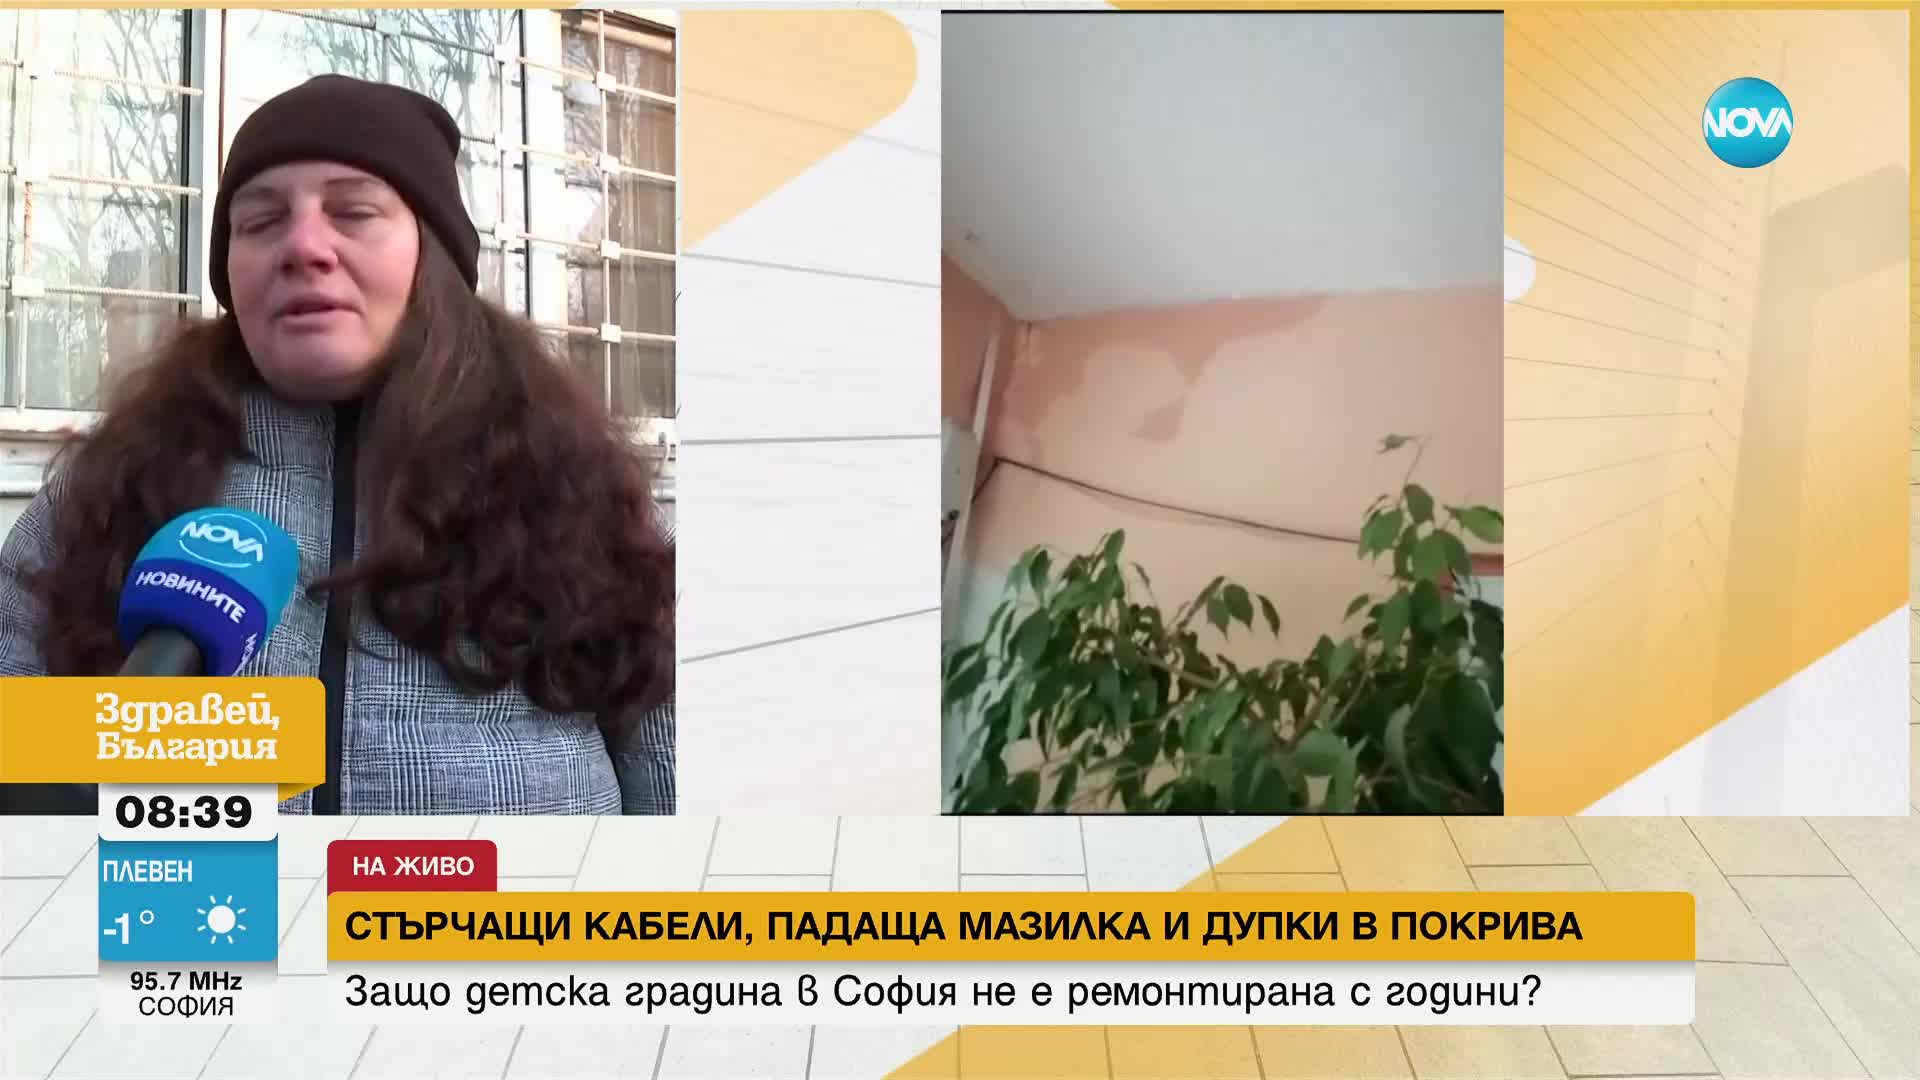 СТЪРЧАЩИ КАБЕЛИ И ДУПКИ В ПОКРИВА: Детска градина в София се нуждае от ремонт